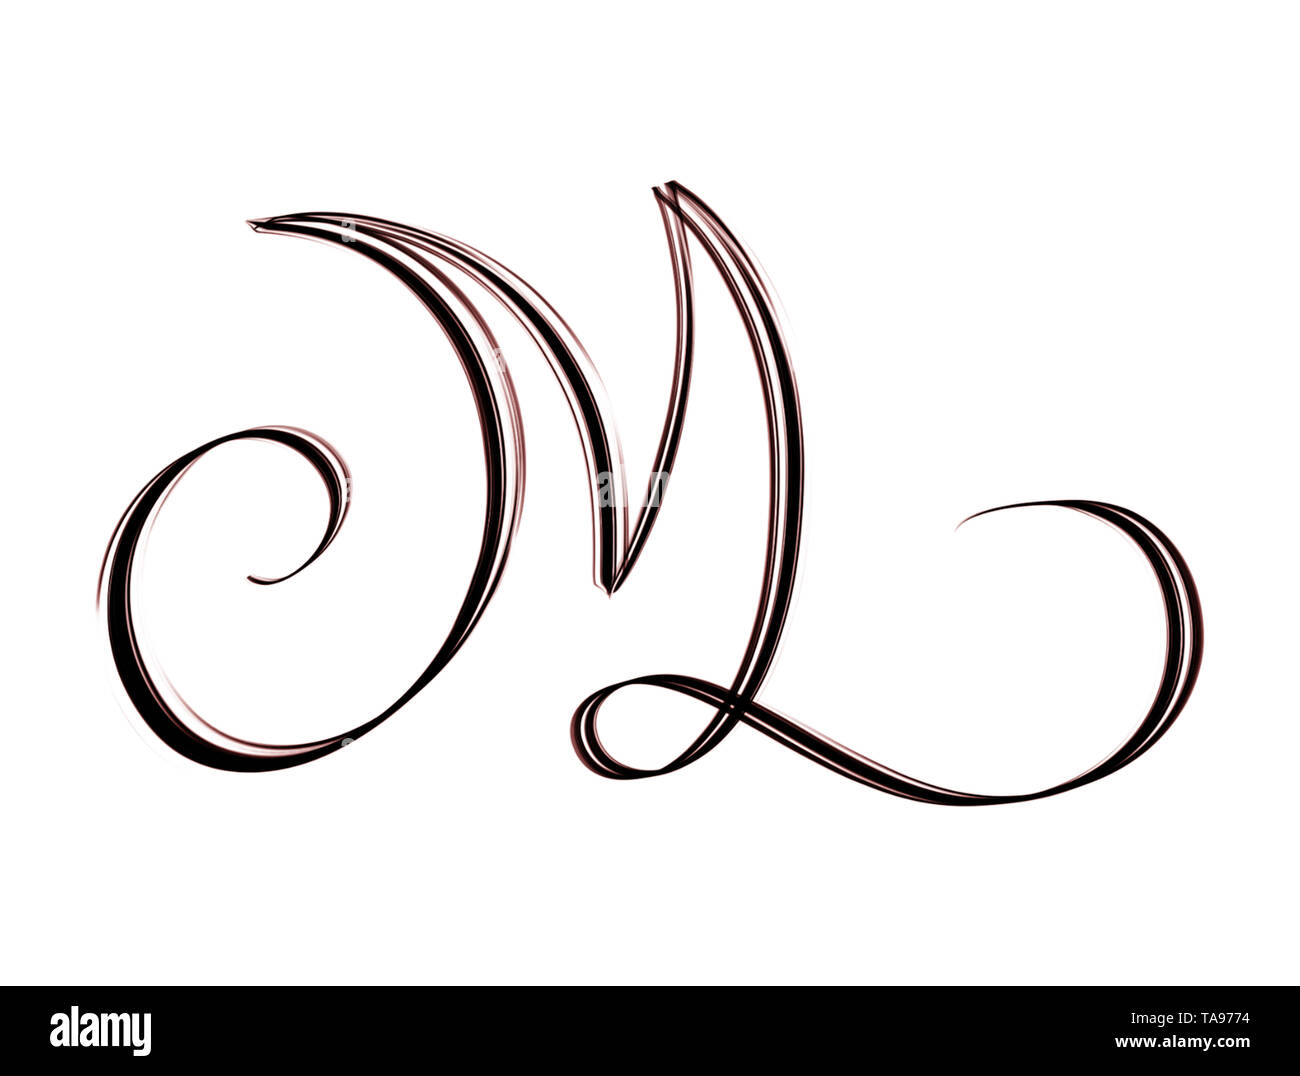 La conception créative de la lettre M - lettrage Brosse à main isolated on white Banque D'Images